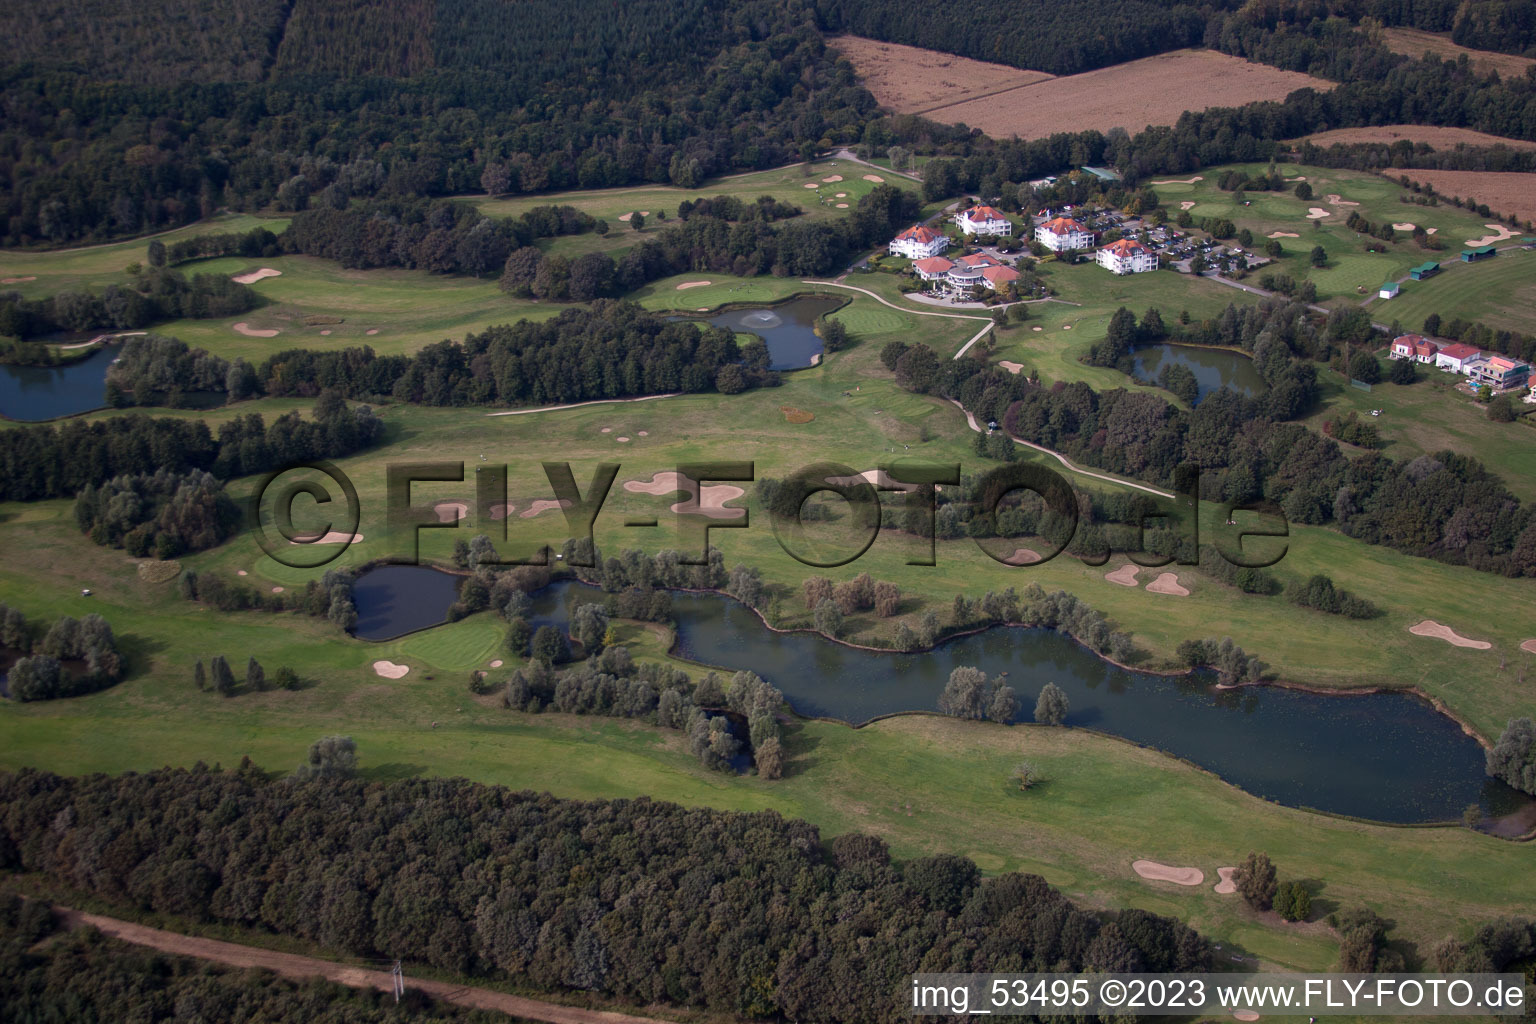 Drone image of Baden-Baden Golf Club Soufflenheim in Soufflenheim in the state Bas-Rhin, France